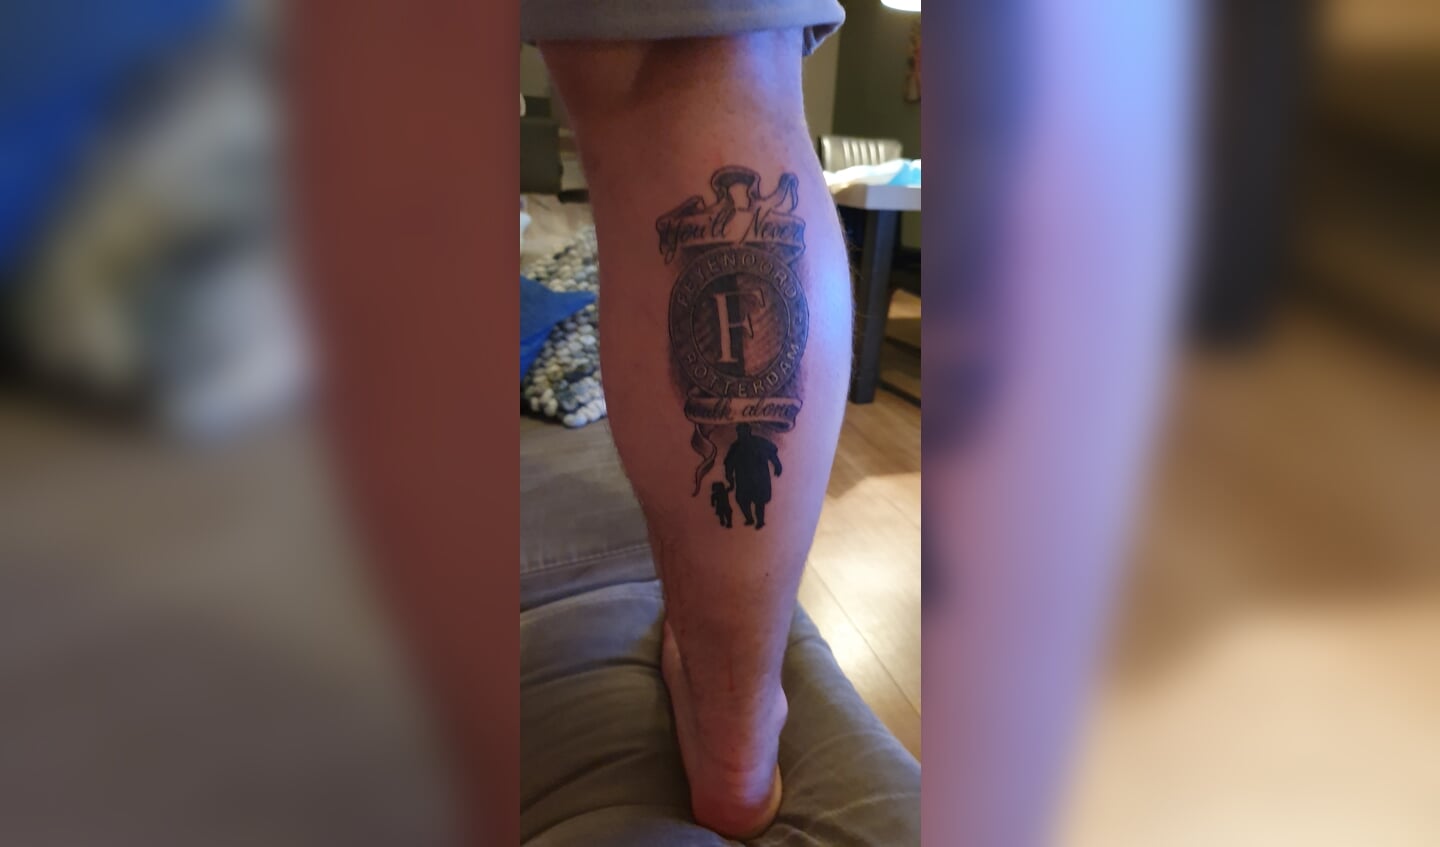  Lars heeft een tatoeage van de club op zijn been   